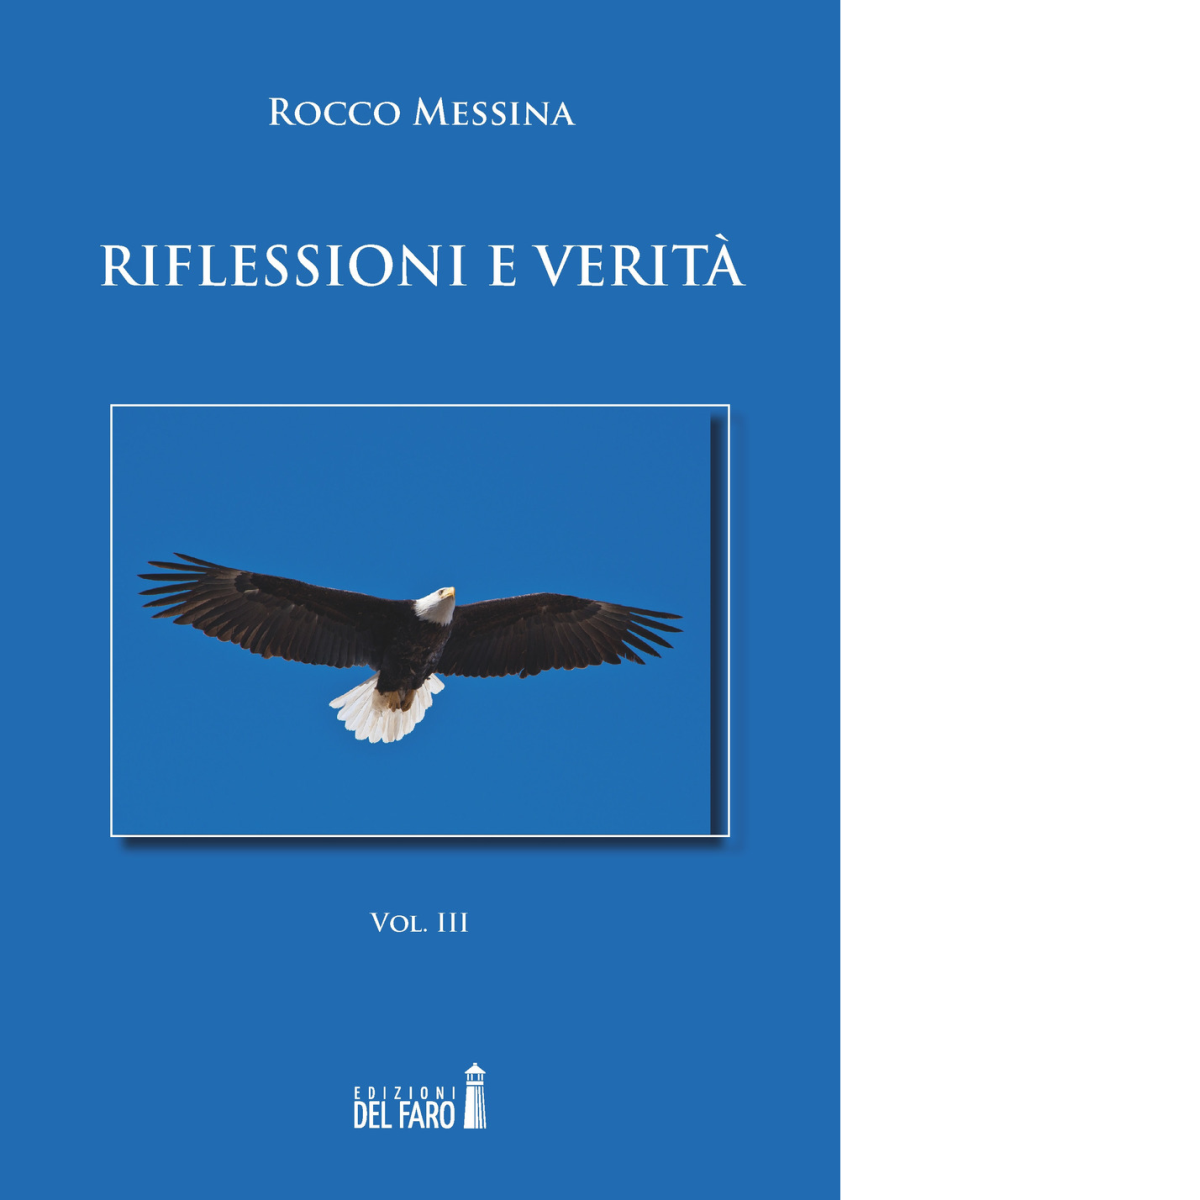 Riflessioni e verit? vol.3 di Rocco Messina - Edizioni Del Faro, 2018 libro usato